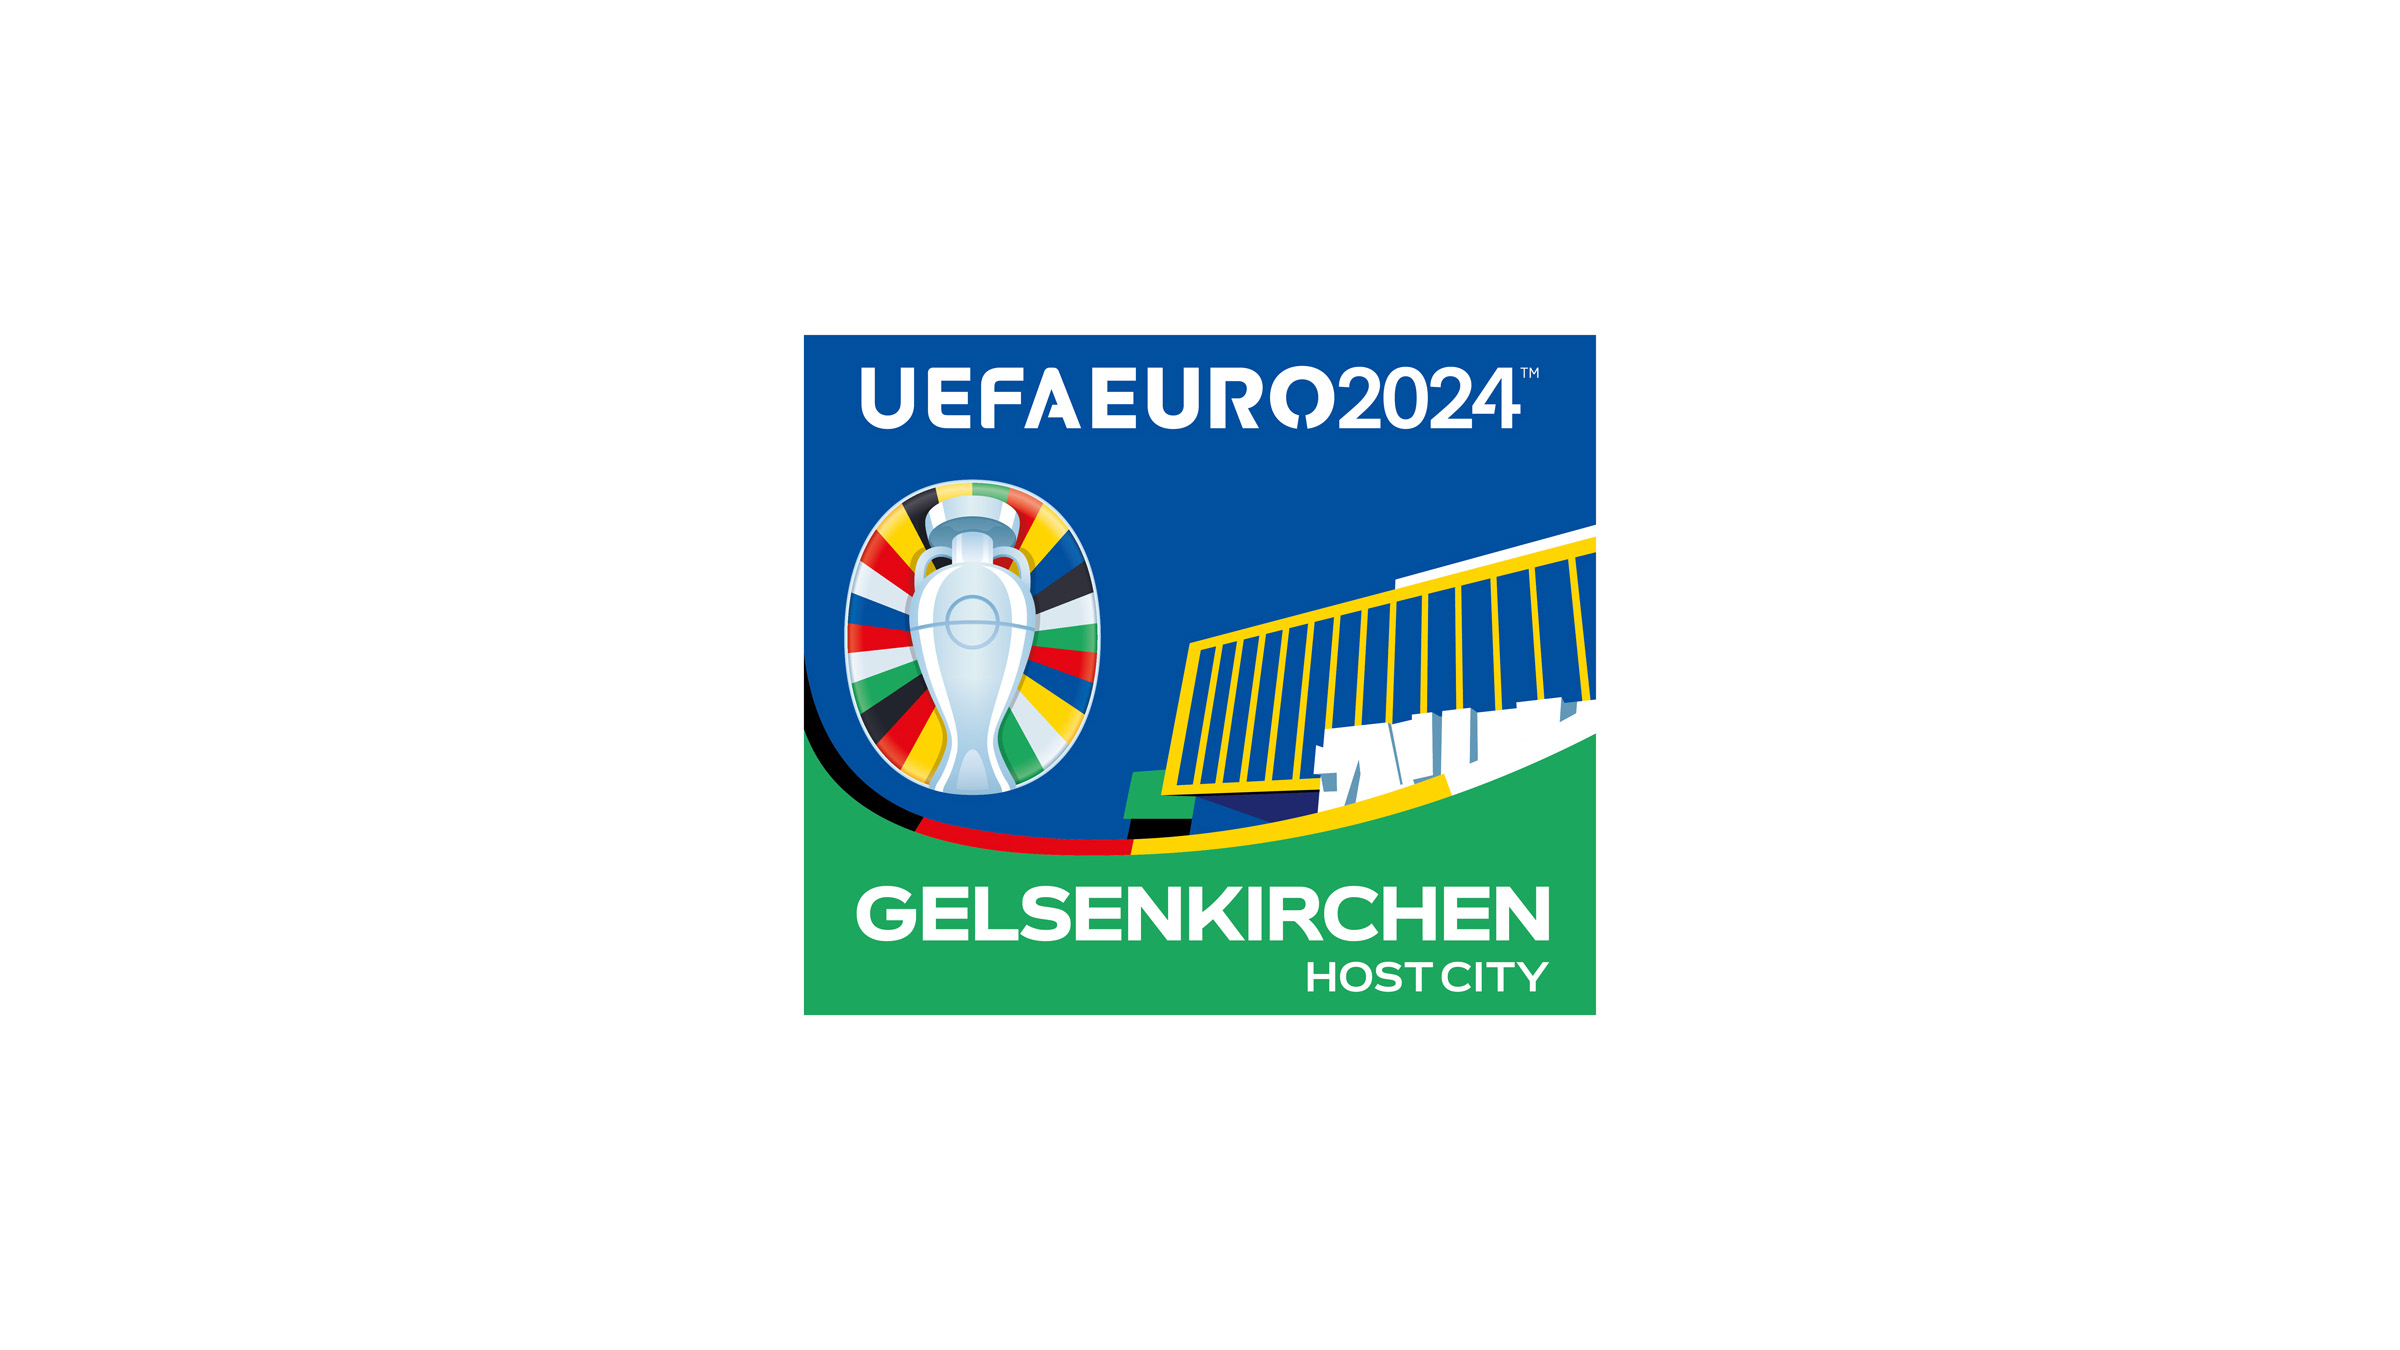 2024 年欧洲杯官方标识揭晓 © 球衫堂 kitstown